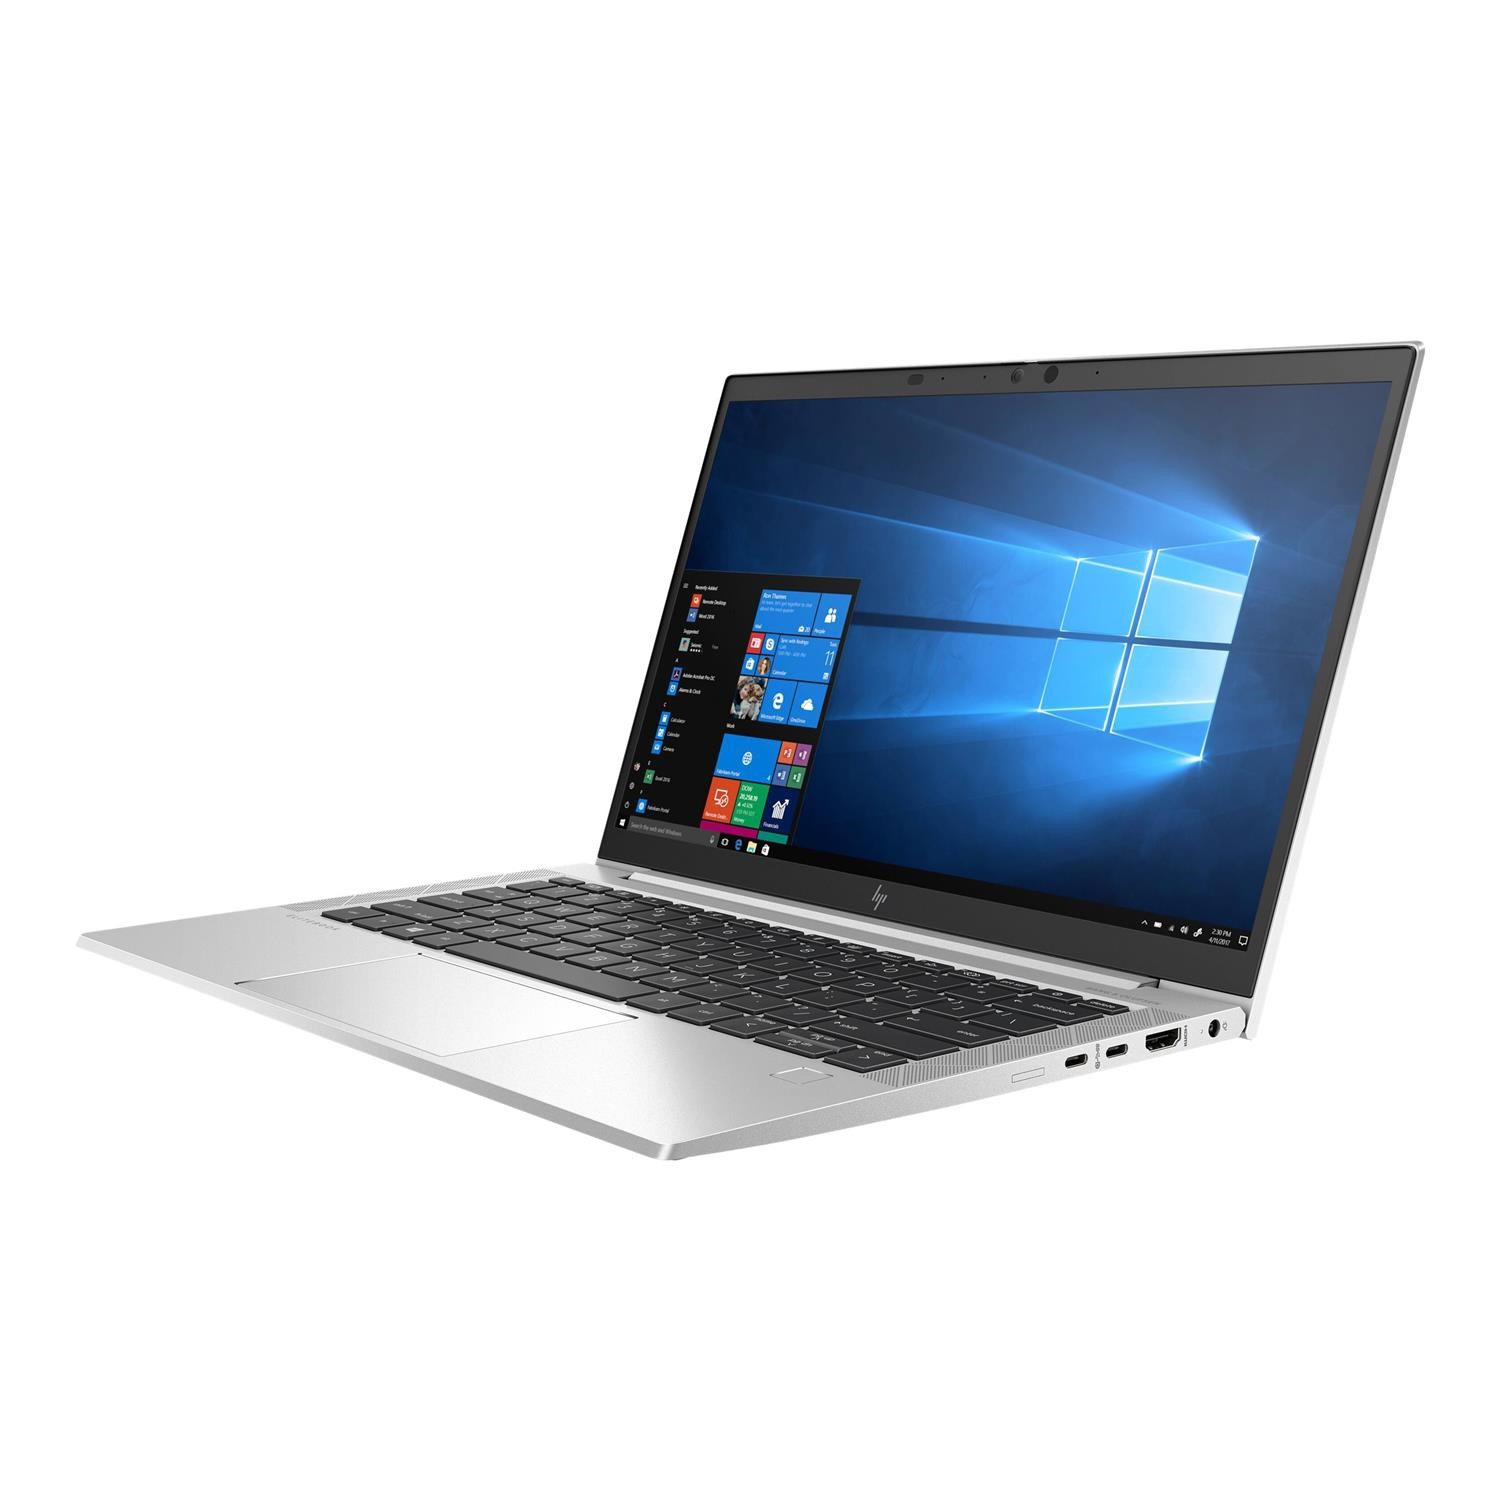 Hp Elitebook 835 G7 HP EliteBook 835 G7 AMD Ryzen 5 Pro 4650U 8GB 256GB SSD 13.3 Inch FHD  Windows 10 Pro Laptop - Laptops Direct